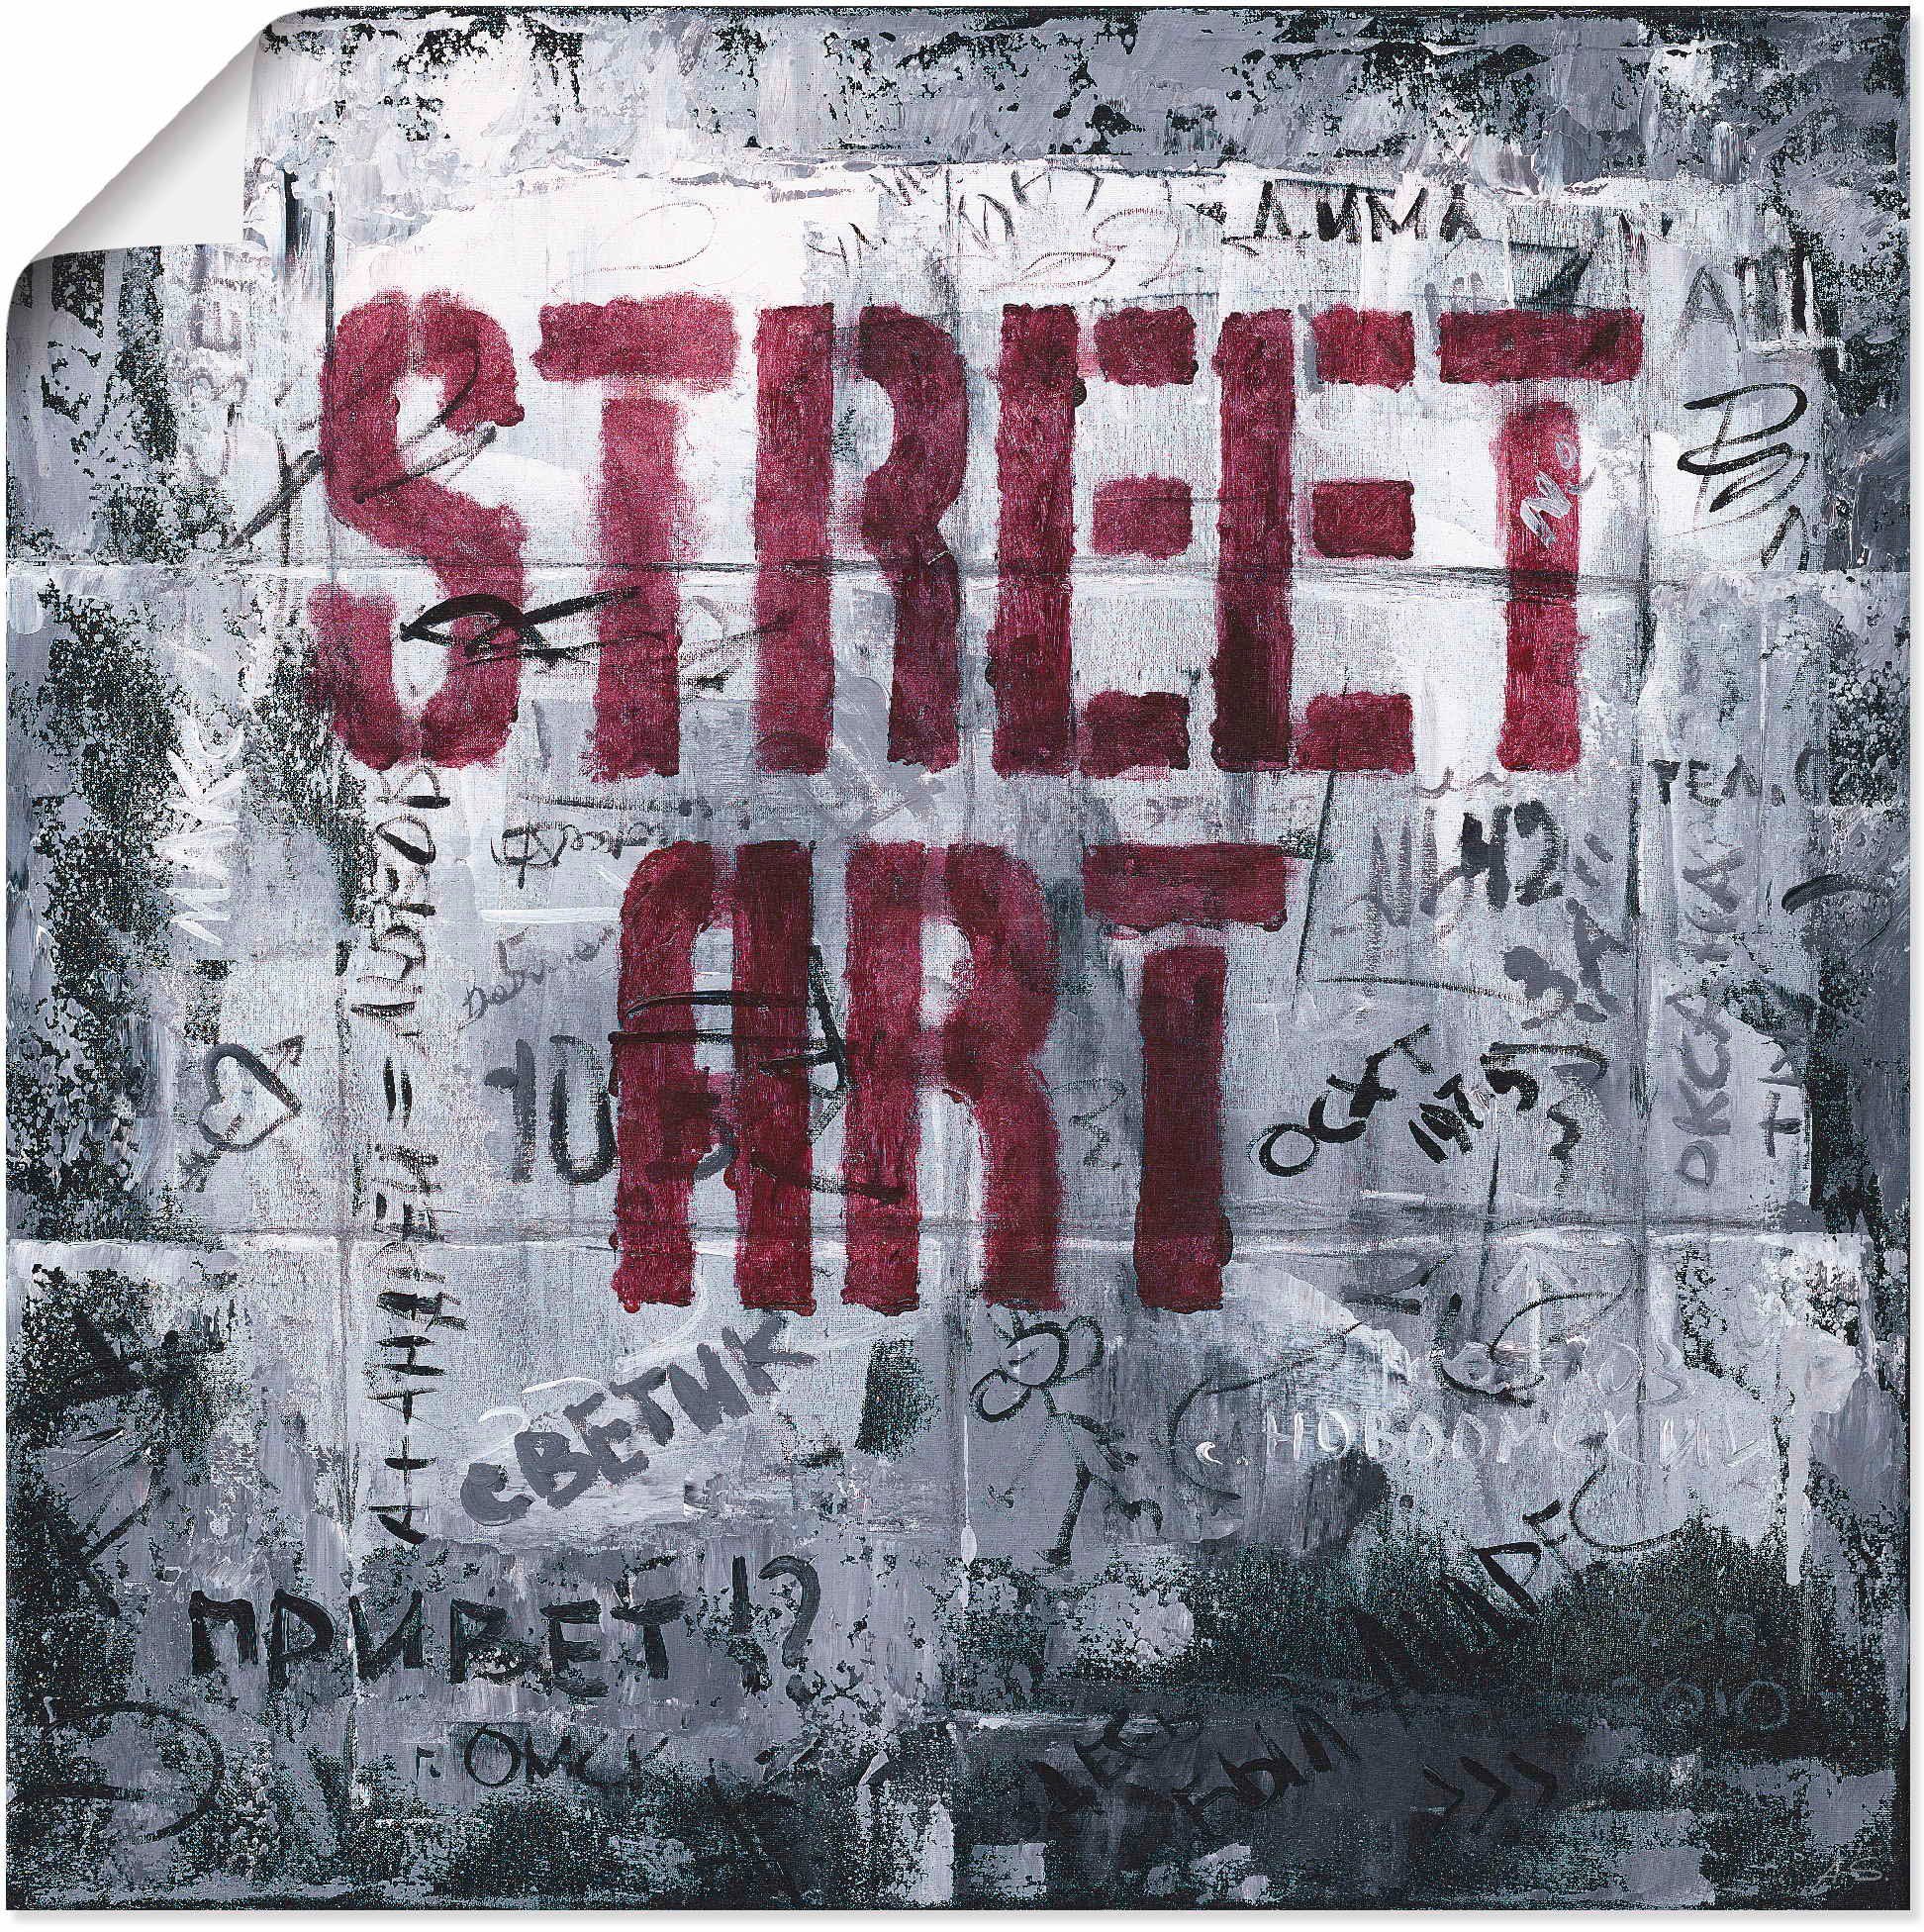 Artland Artprint Street Art - straatkunst in vele afmetingen & productsoorten - artprint van aluminium / artprint voor buiten, artprint op linnen, poster, muursticker / wandfolie o